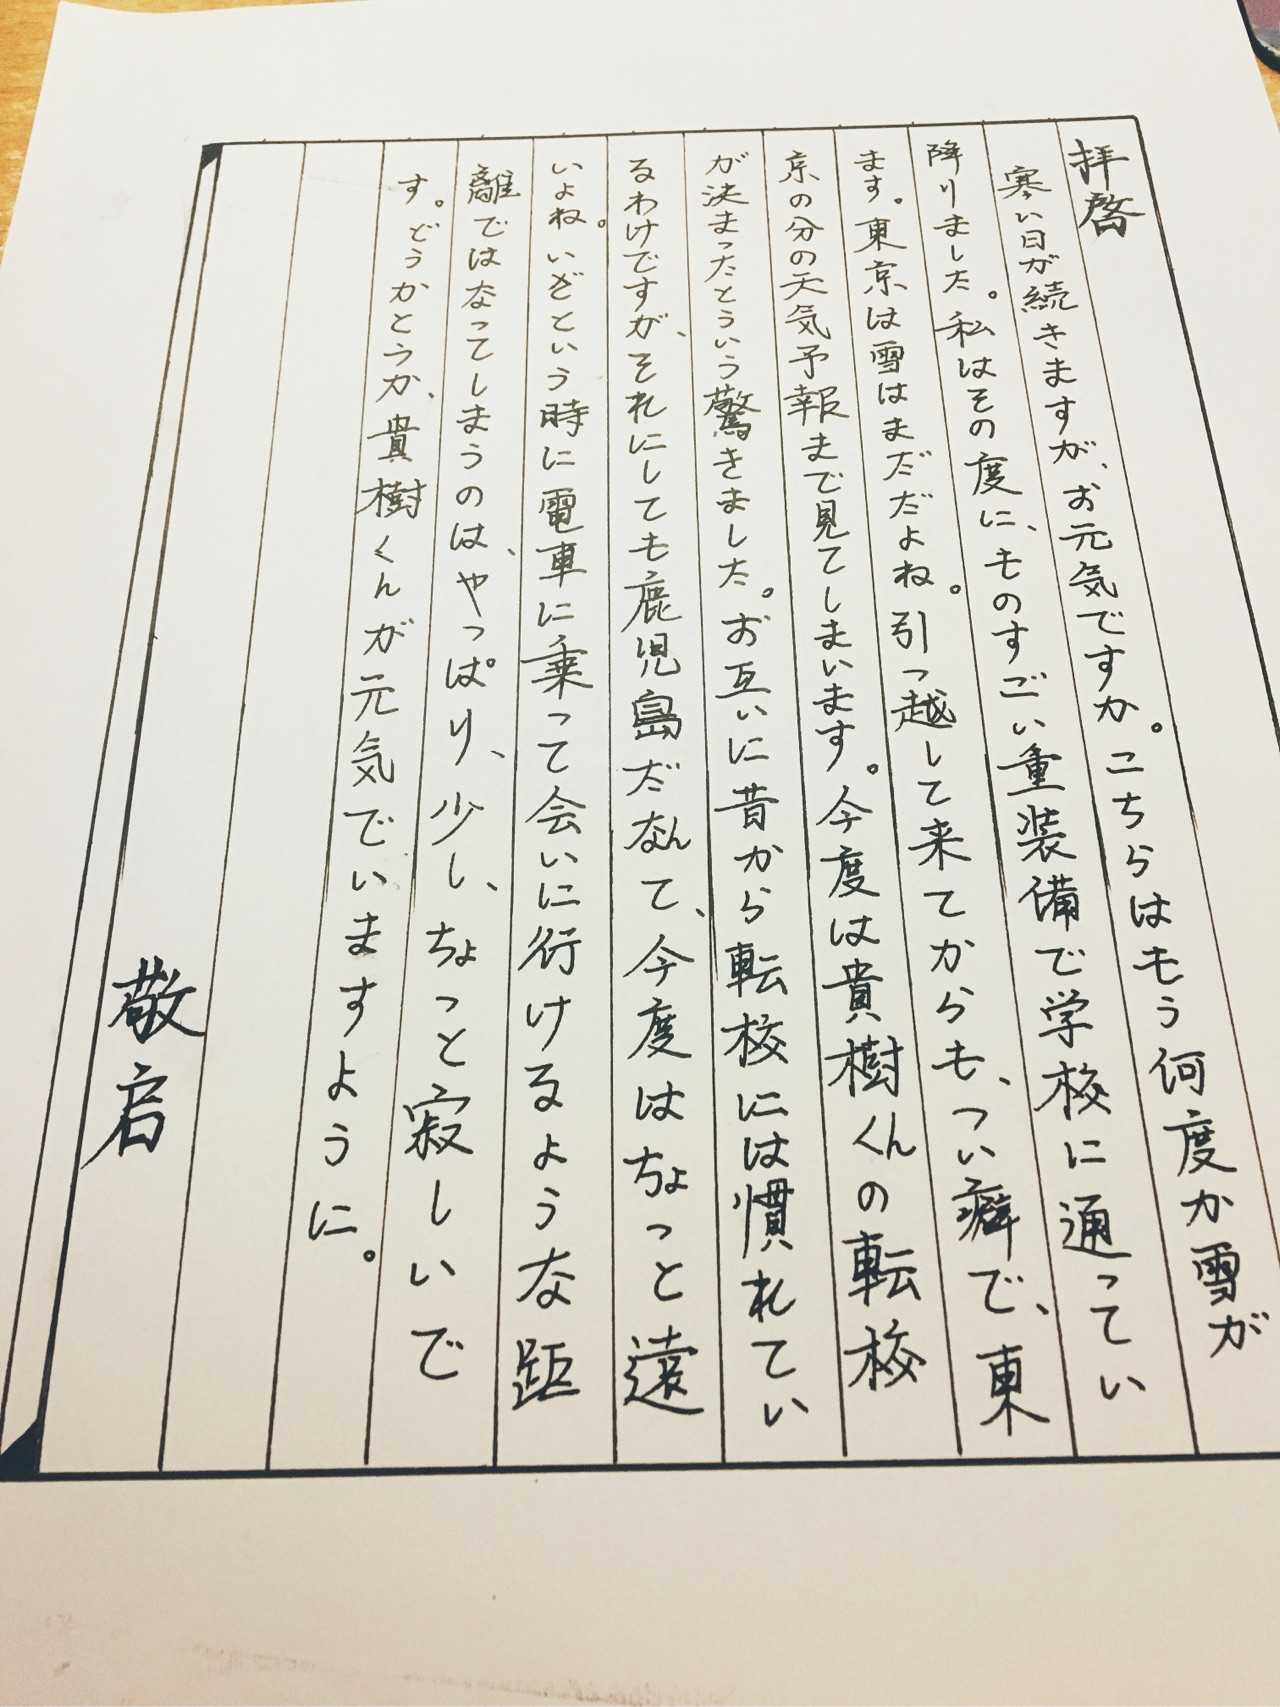 日文写信格式图片